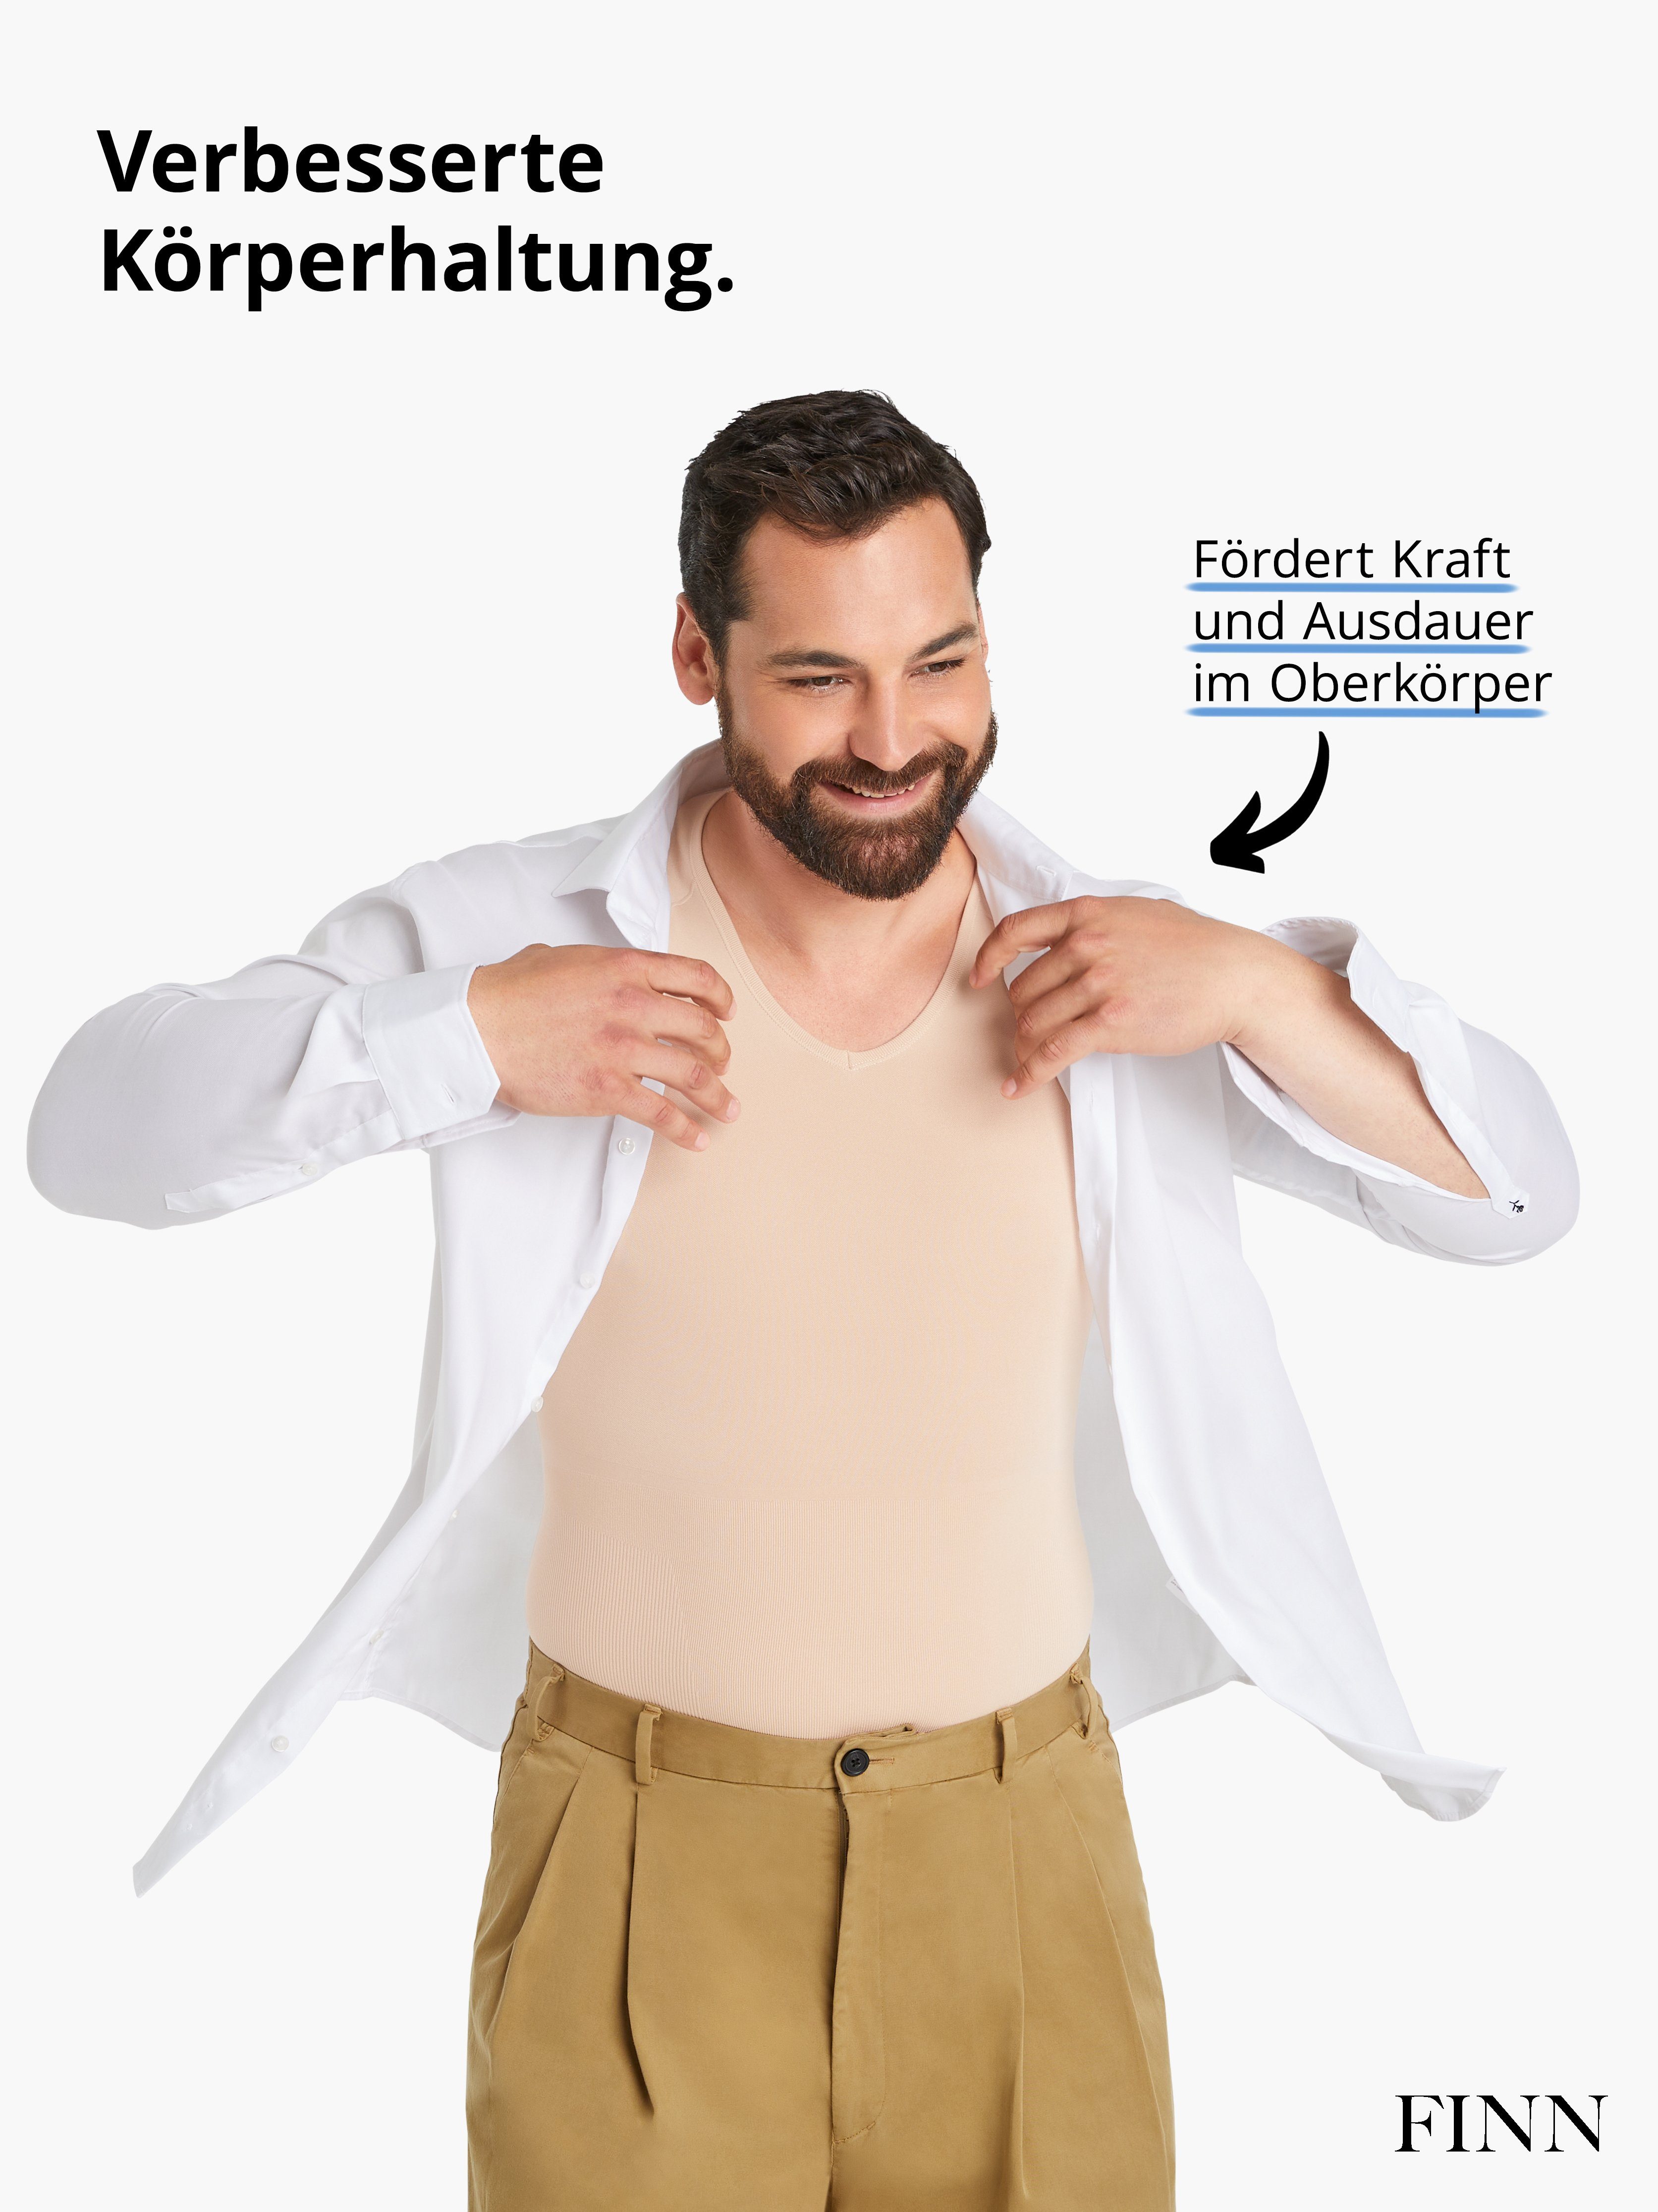 FINN Design Shapinghemd Seamless Nähte Männer für Herren Body-Shaper Light-Beige Kompressions-Unterhemd ohne Starker